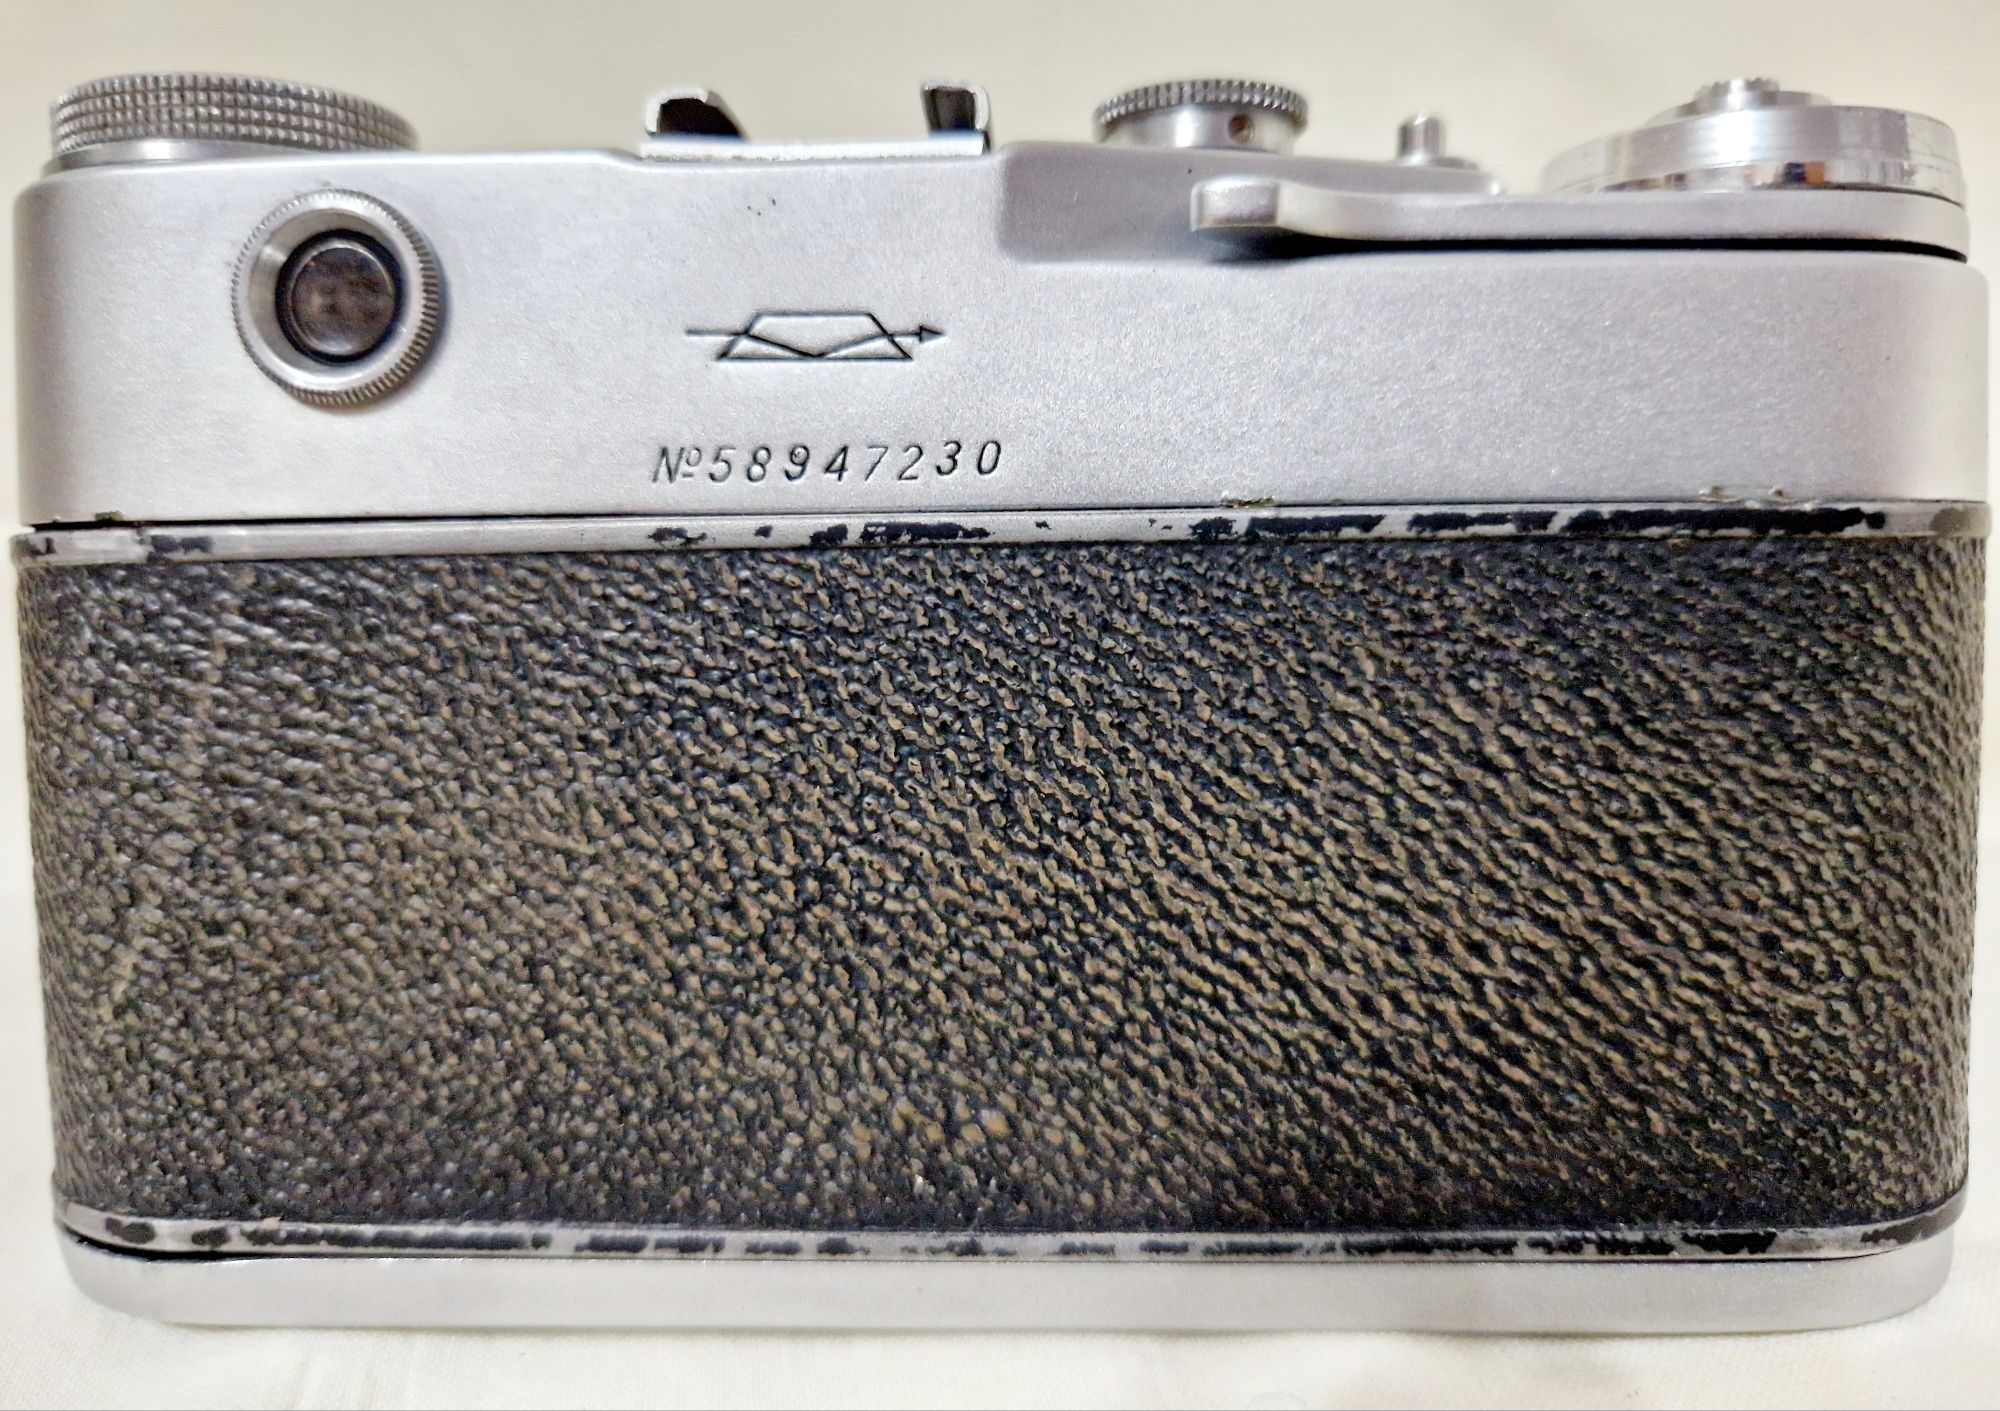 Продам фотоаппарат Зорький-5 с автозапуском